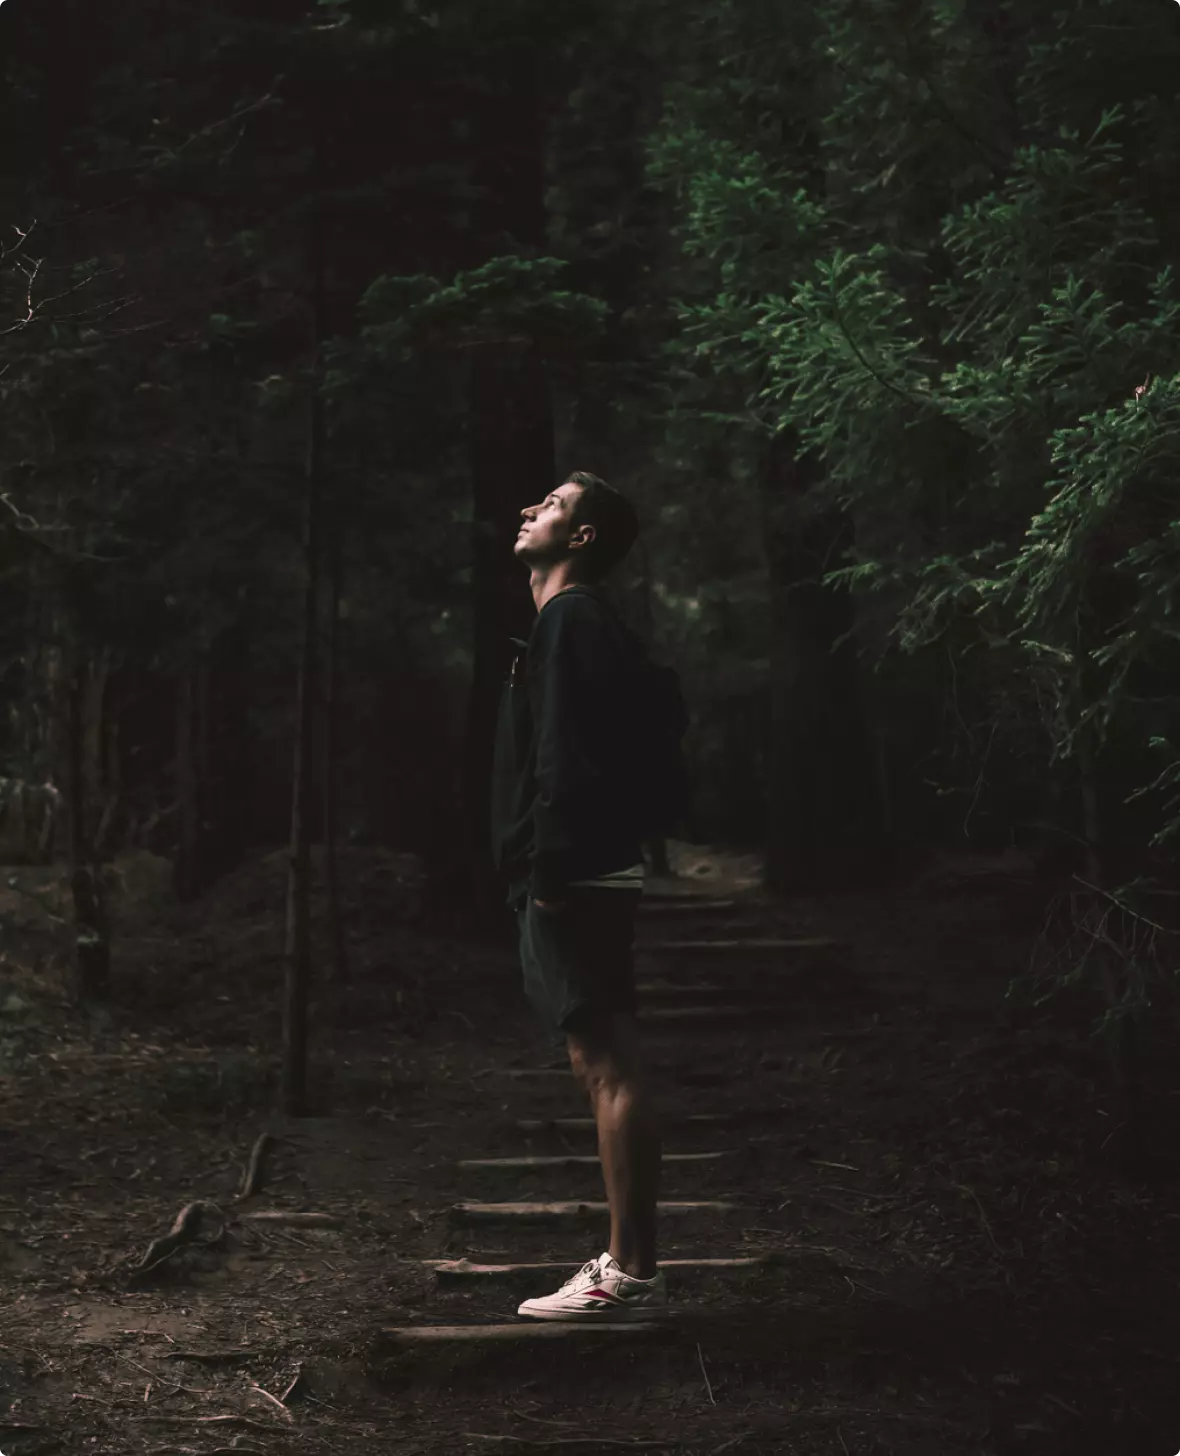 David Gallardo in a forest